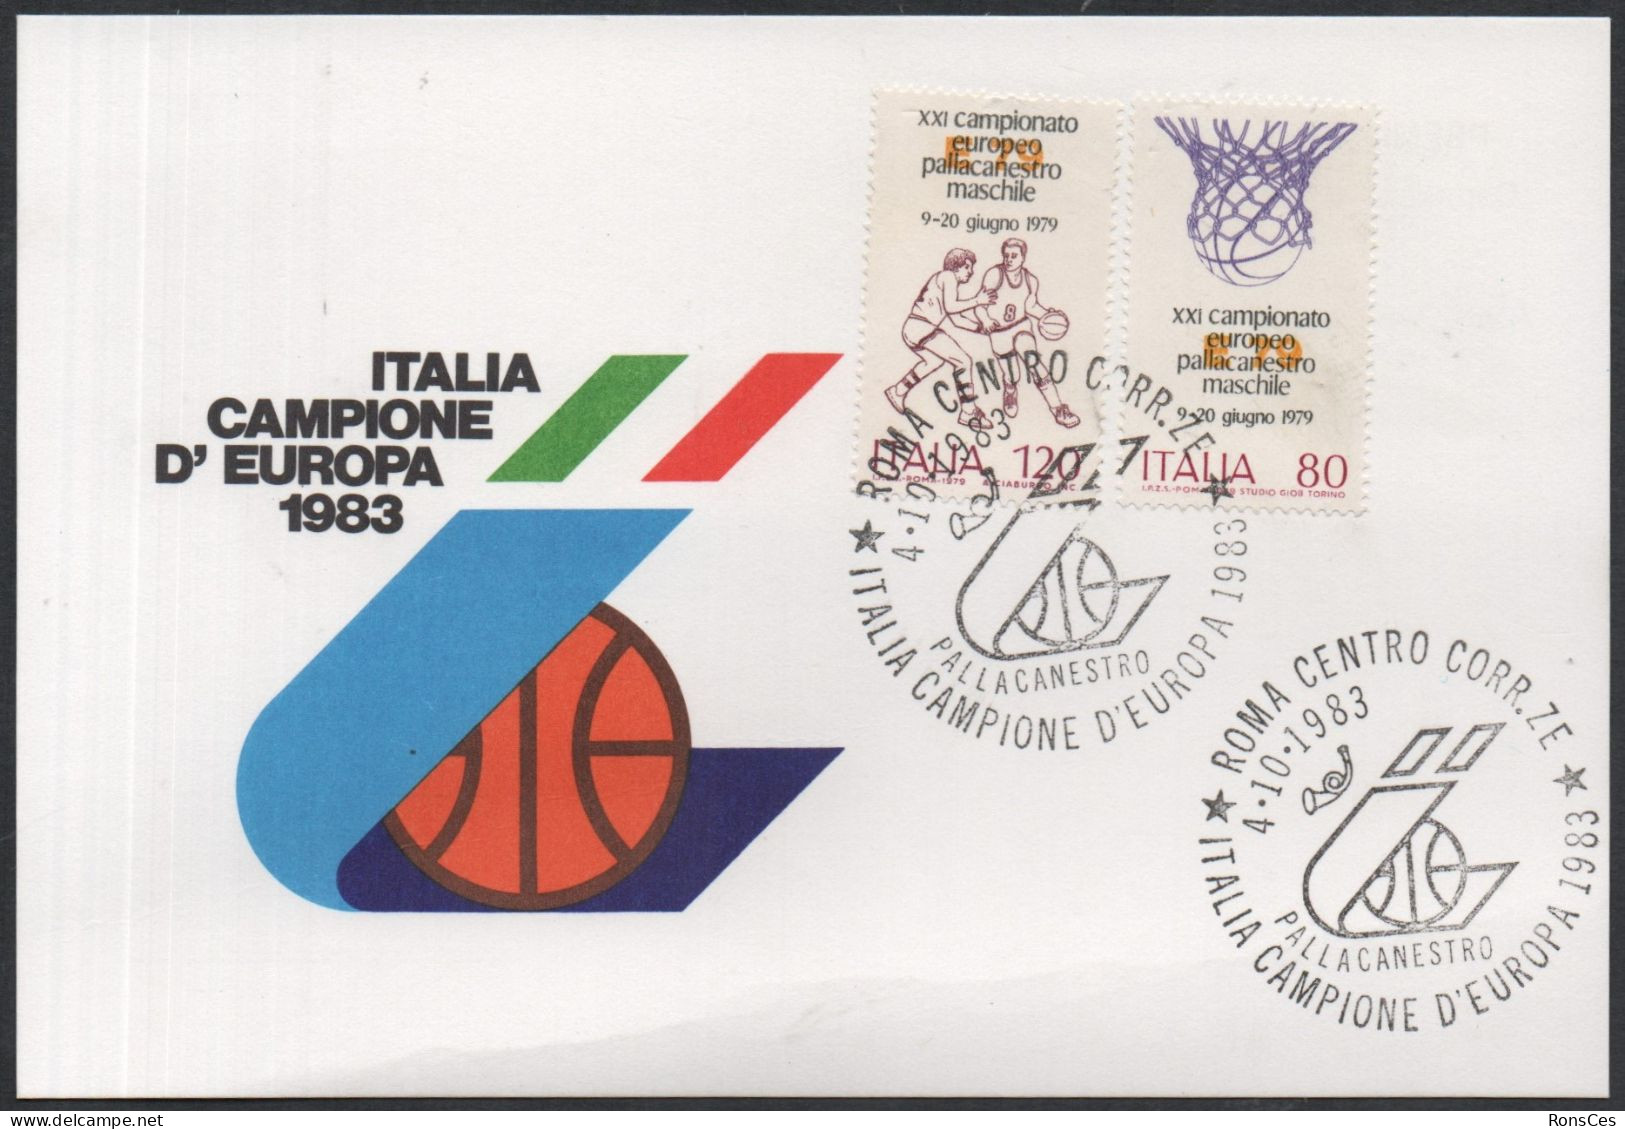 BASKETBALL - ITALIA ROMA 1983 - ITALIA CAMPIONE D'EUROPA PALLACAMESTRO - CARTOLINA UFFICIALE - A - Pallacanestro